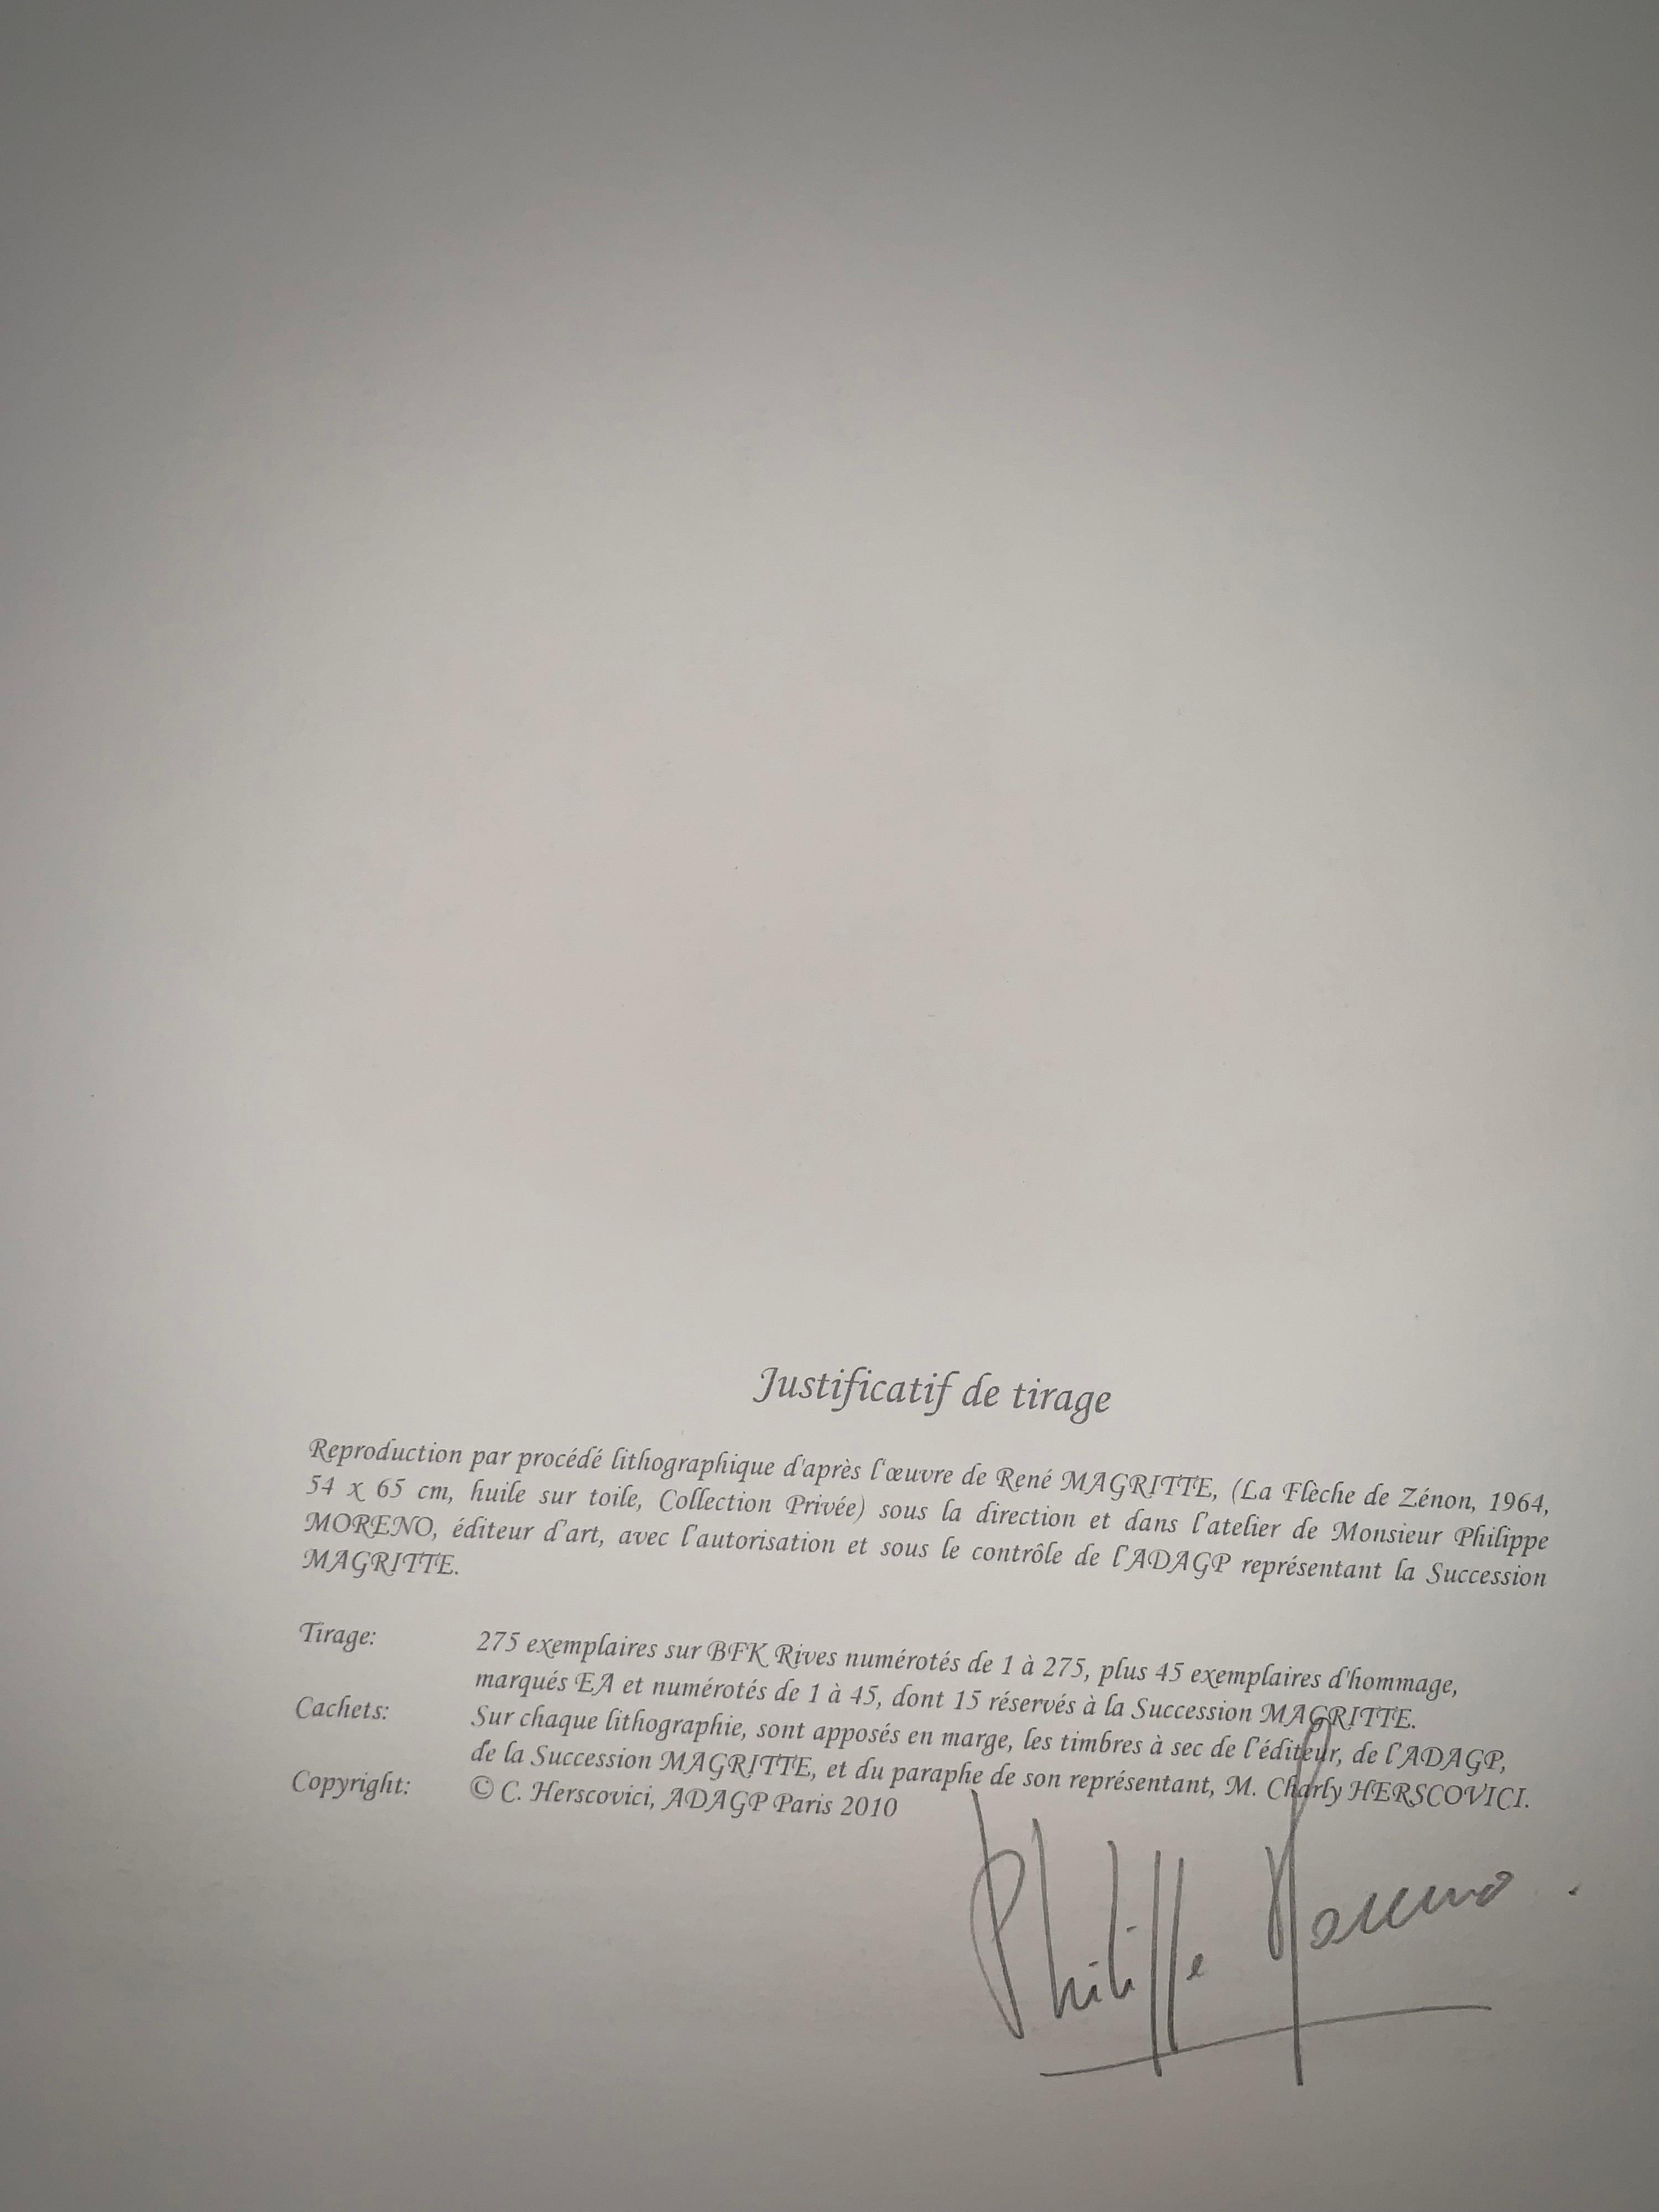 Nummerierung: 138/275
Farblithographie nach dem Öl auf Leinwand von René Magritte aus dem Jahr 1964, signiert von Magritte und nummeriert in einer Auflage von 275 Exemplaren. 
Die Lithographie trägt die Trockenstempel der Magritte-Stiftung und der